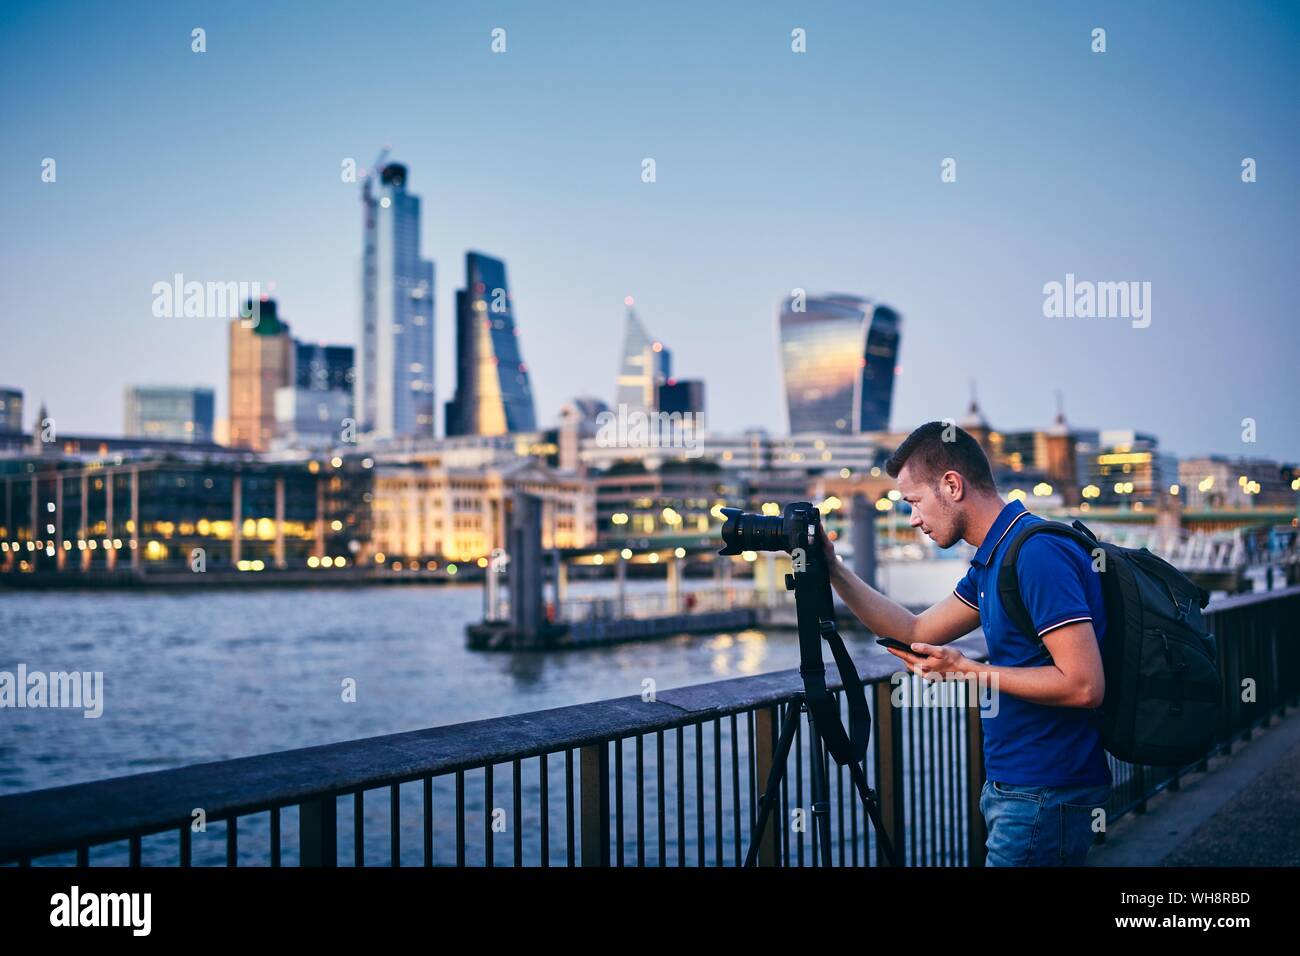 Junger Mann fotografieren mit Stativ auf Damm gegen urban skyline. Fotograf Holding smart phone mit App. Stadt leben in London, United Kingdo Stockfoto